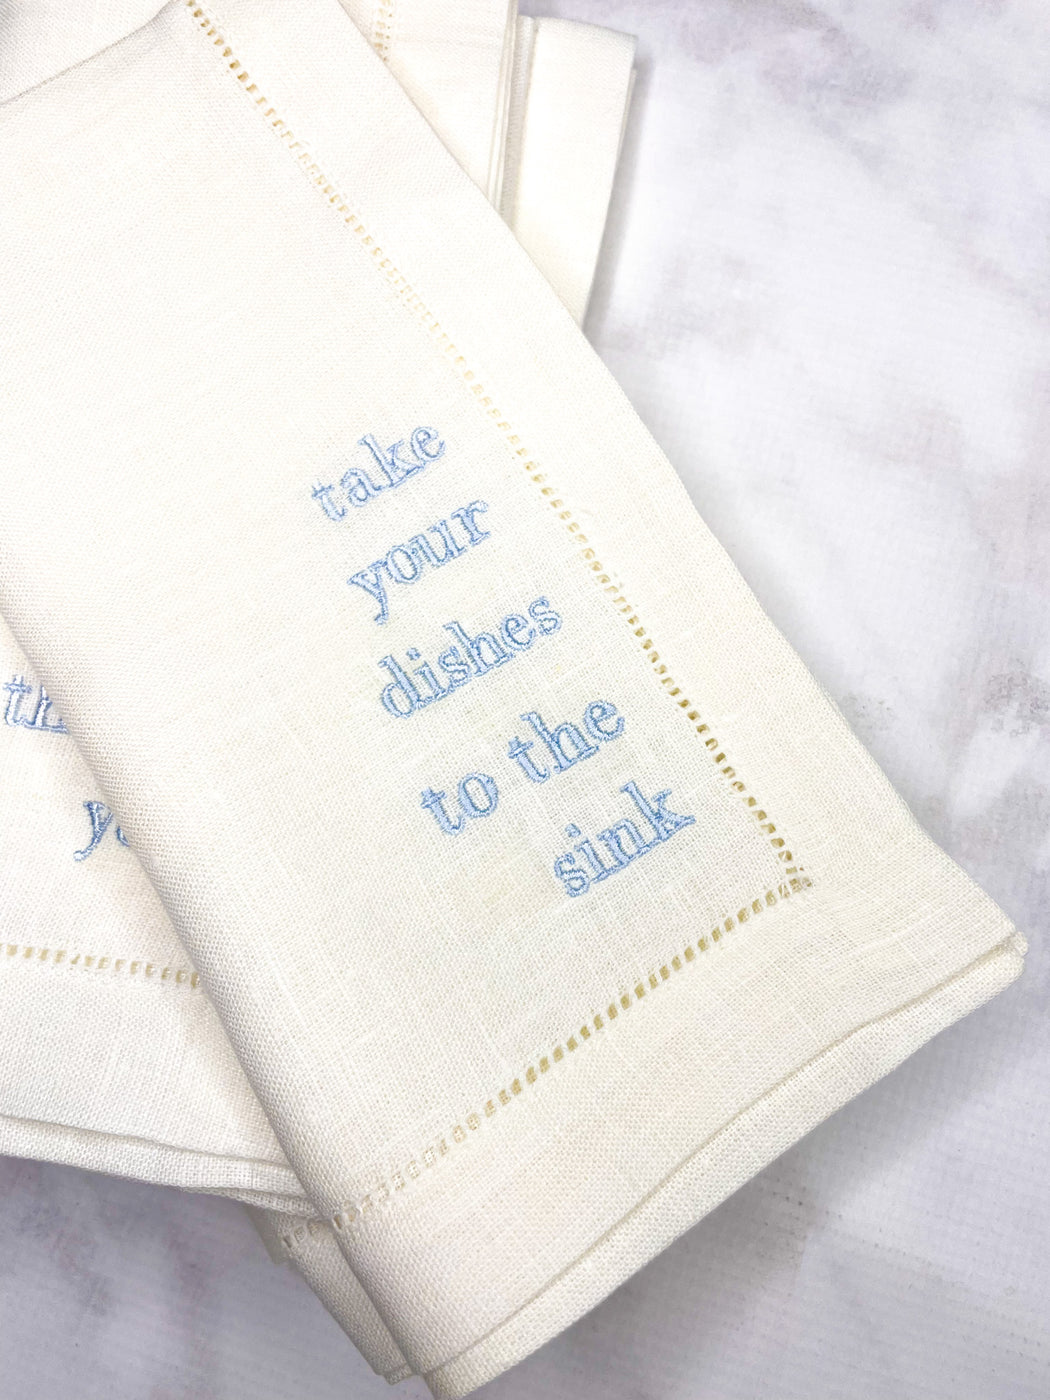 Linen/Cotton Blend Hemstitched Dinner Napkins - Manners Set of Napkins